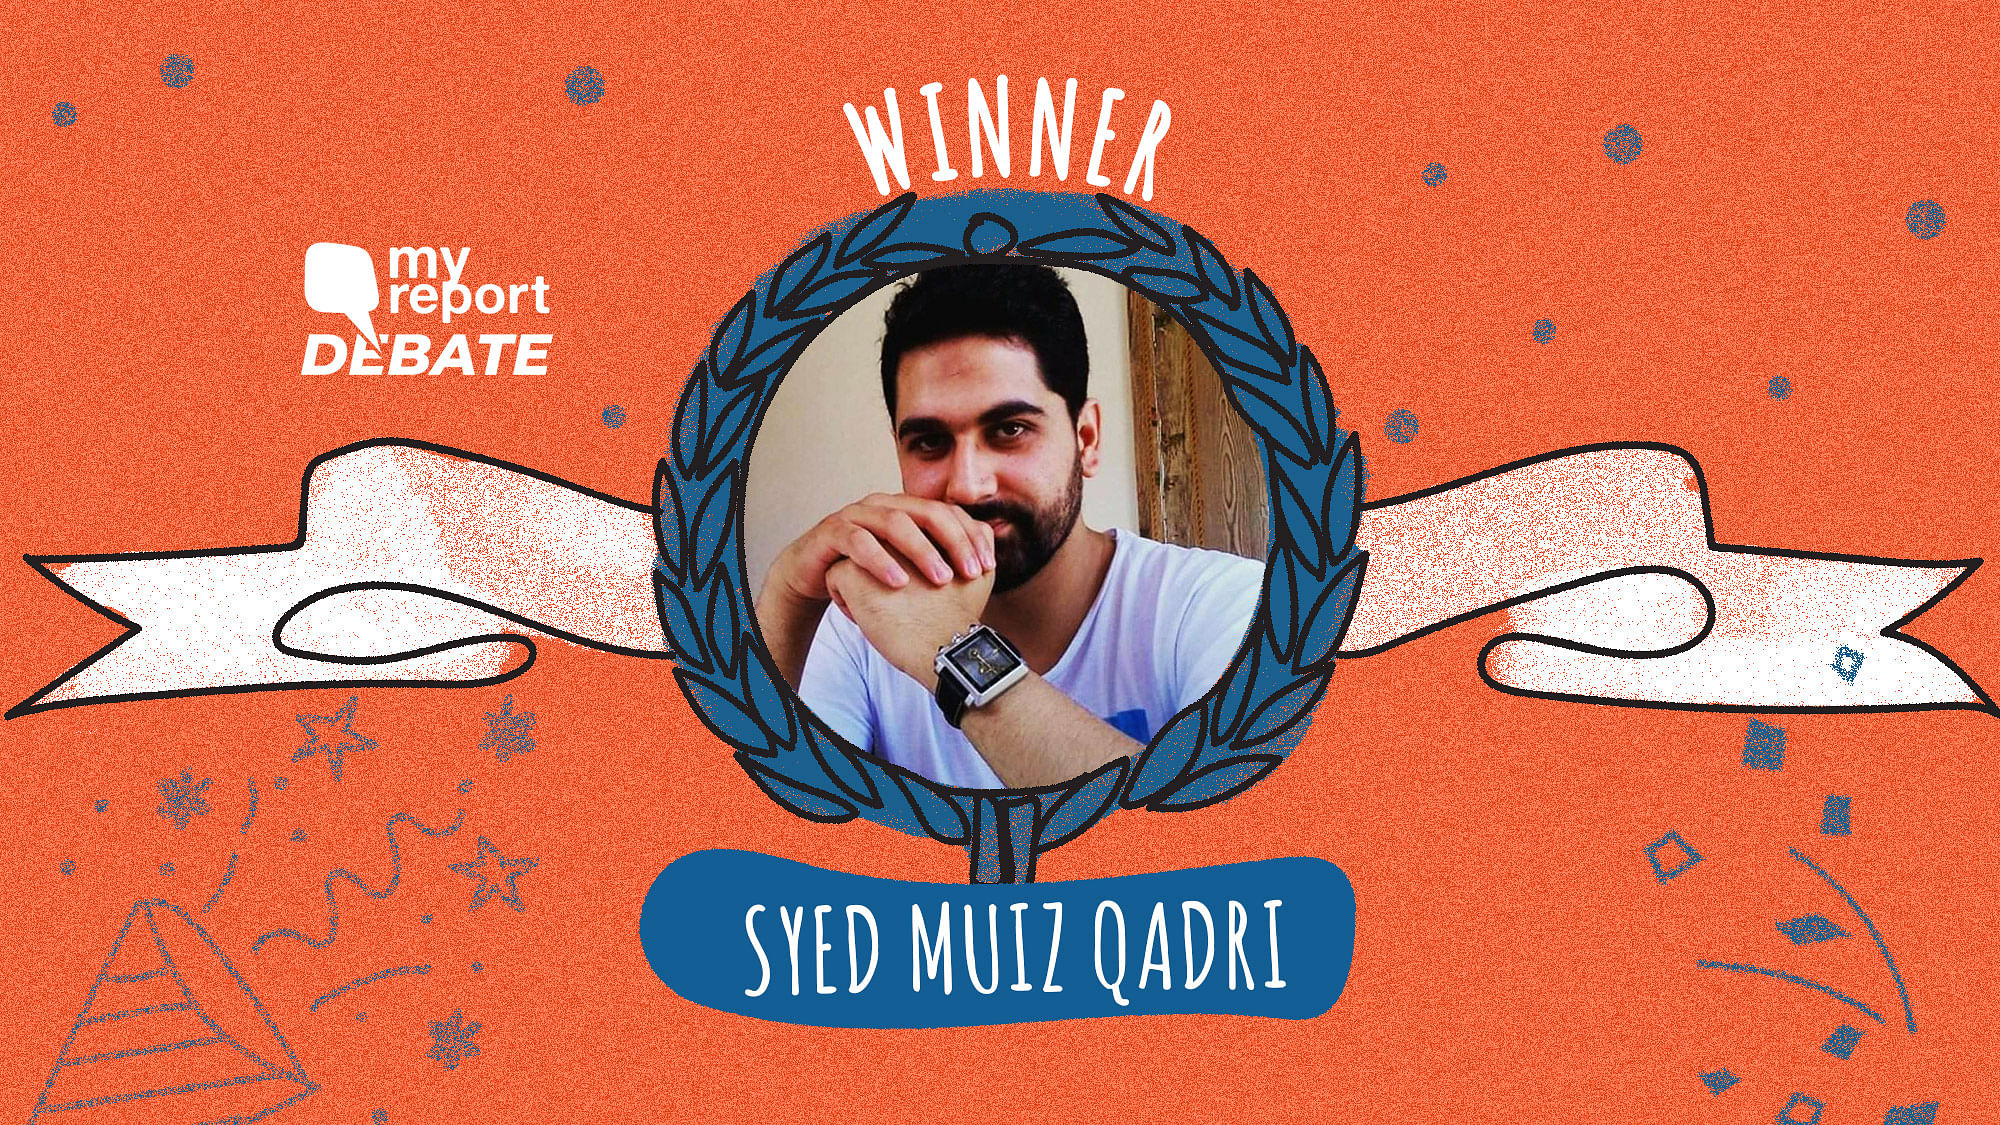 Syed Muiz Qadri is the winner of My Report Debate II.